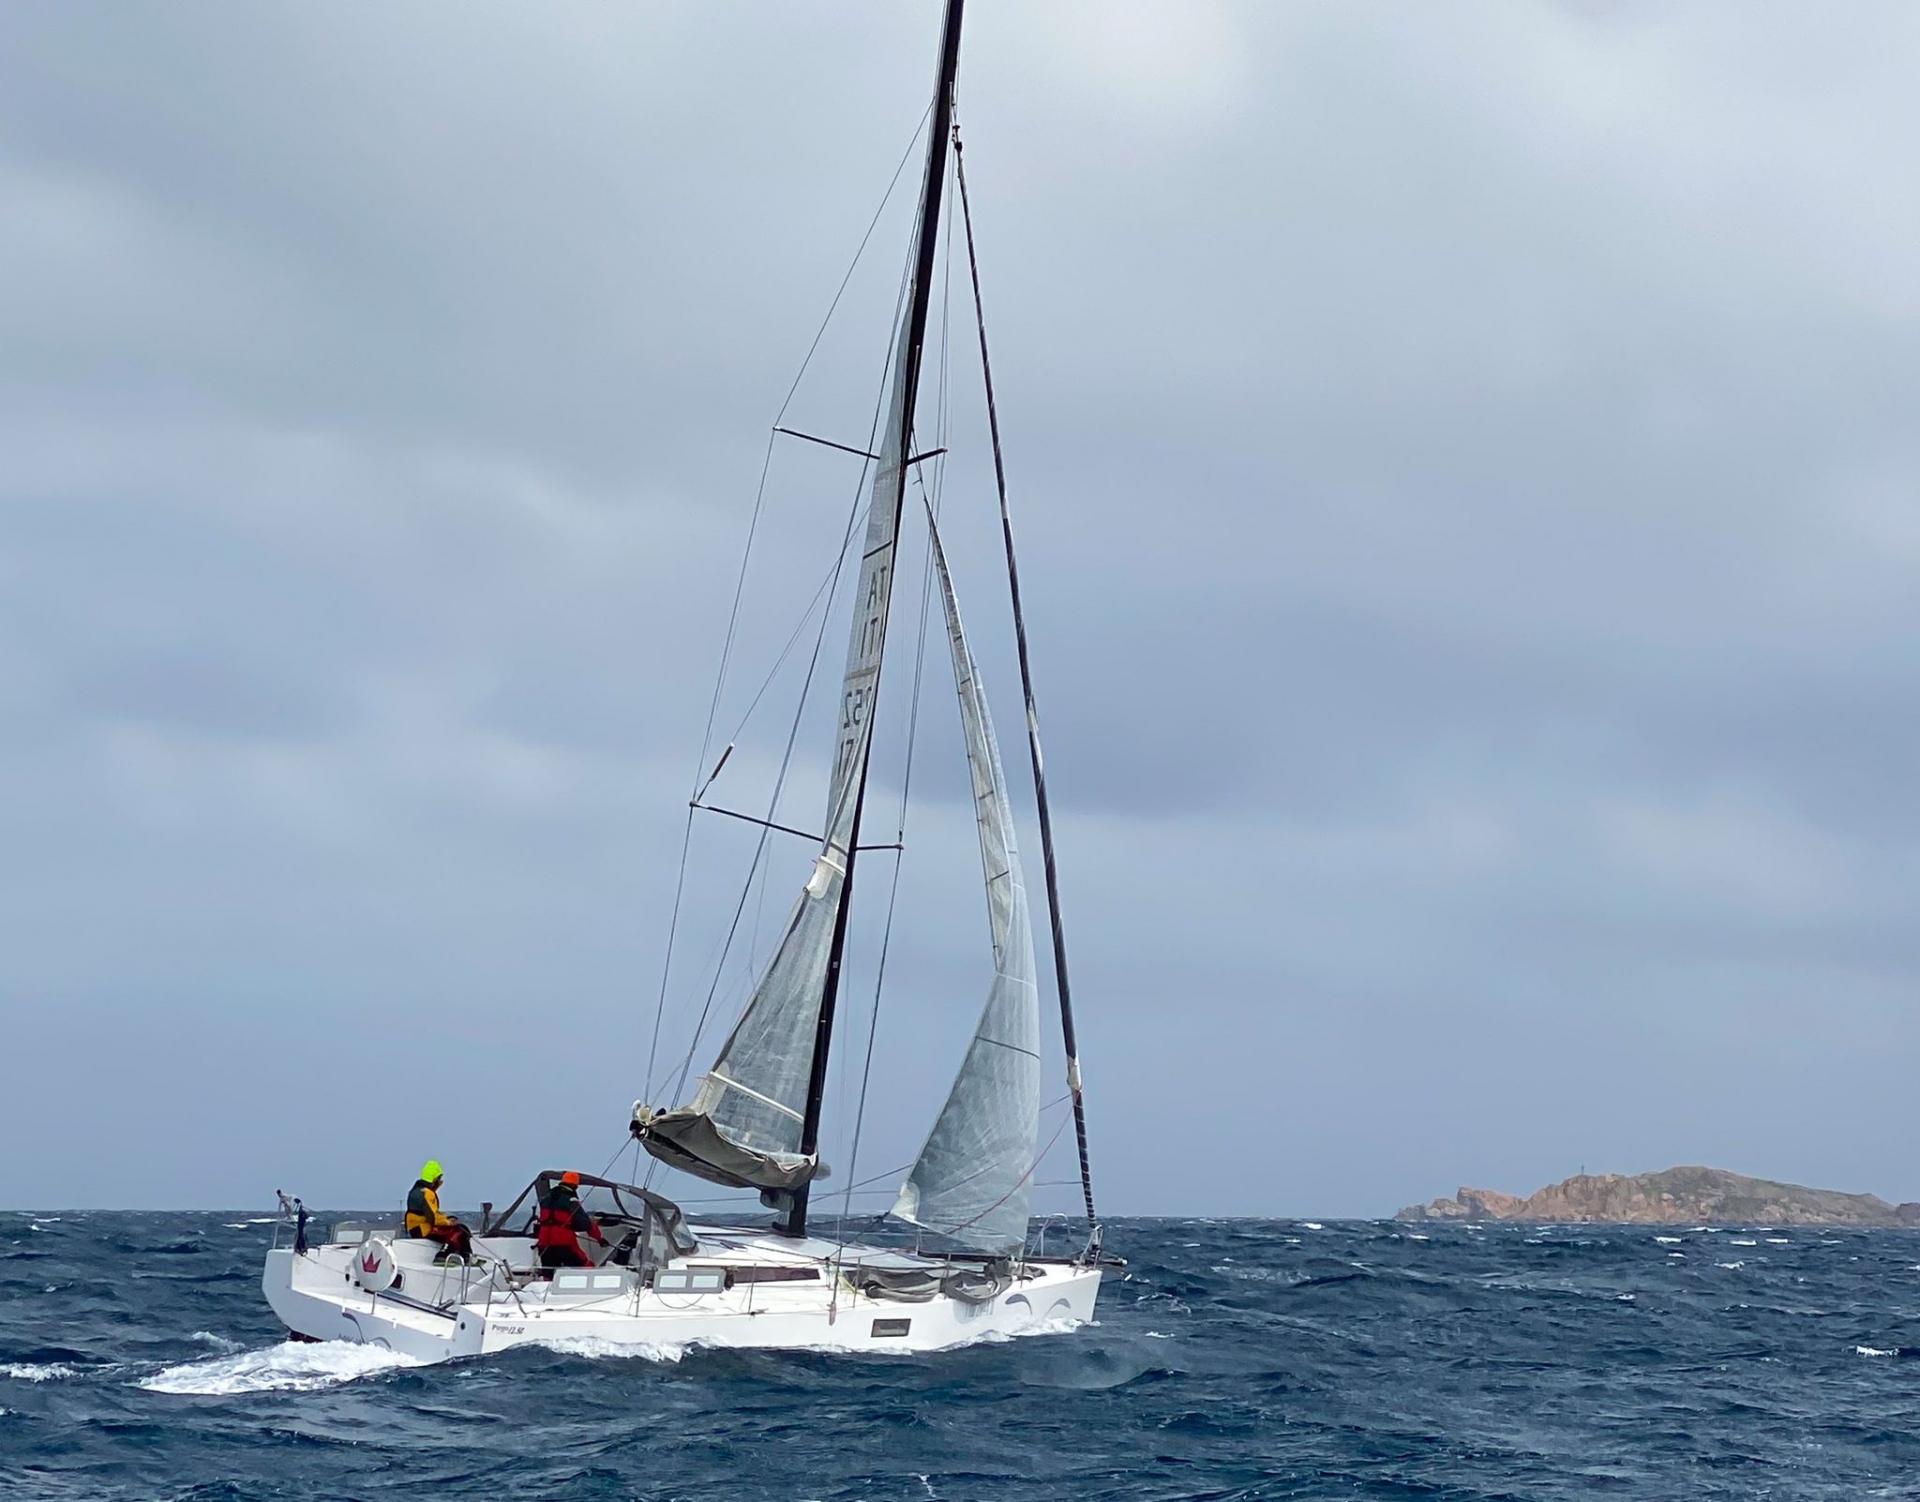 RAN 630, 'MAGIA' PRIMA BARCA AL PASSAGGIO DI PORTO CERVO - News - Yacht Club Costa Smeralda